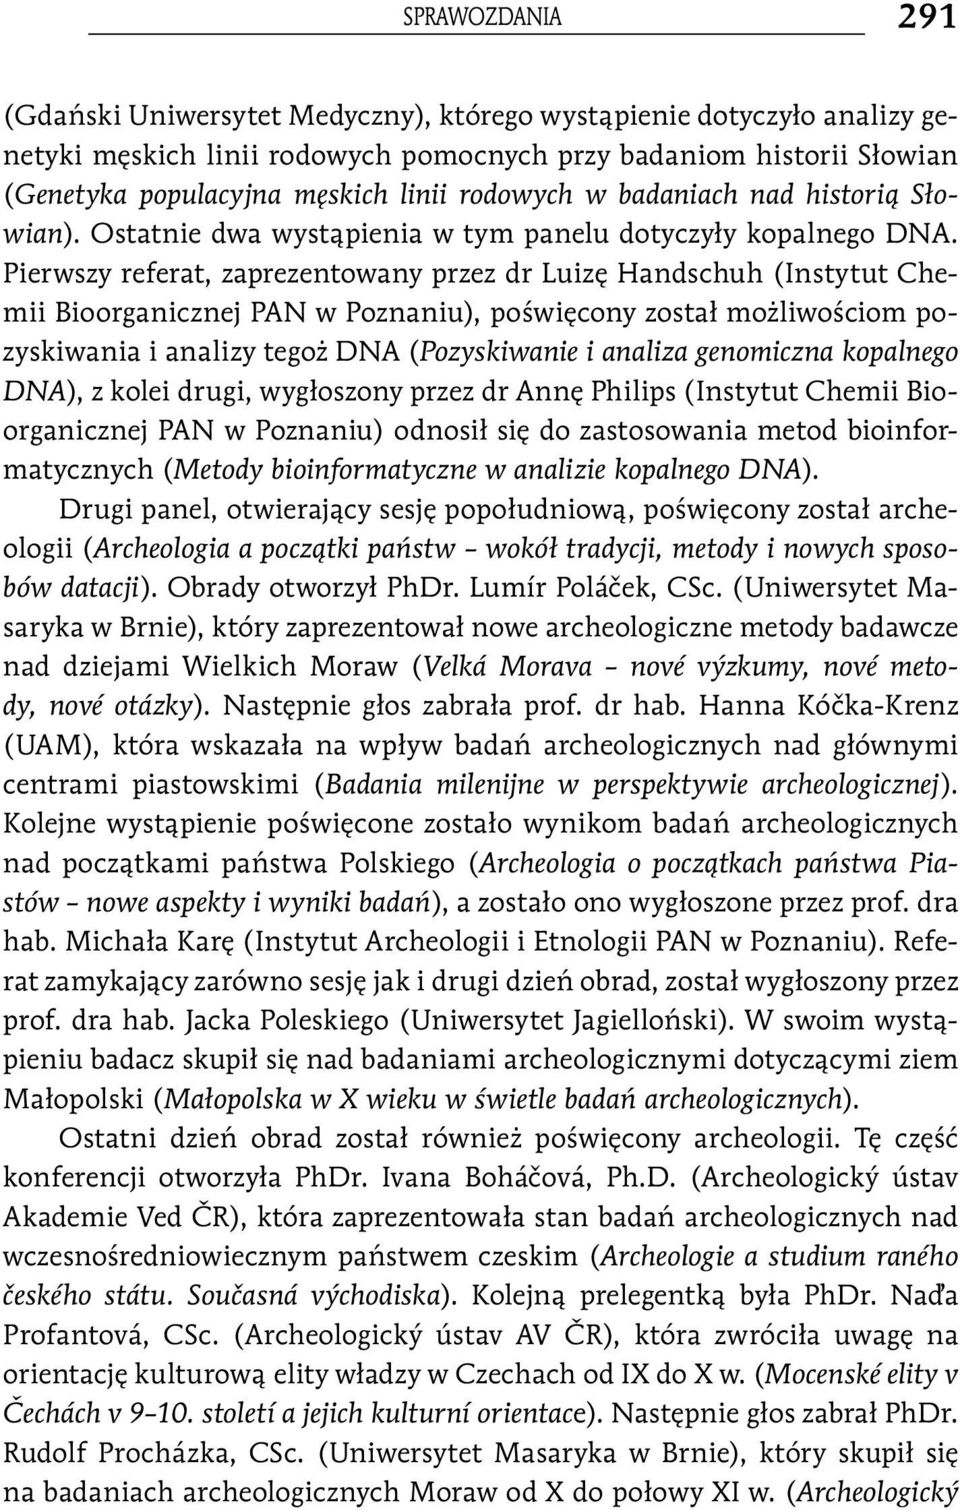 Pierwszy referat, zaprezentowany przez dr Luizę Handschuh (Instytut Chemii Bioorganicznej PAN w Poznaniu), poświęcony został możliwościom pozyskiwania i analizy tegoż DNA (Pozyskiwanie i analiza